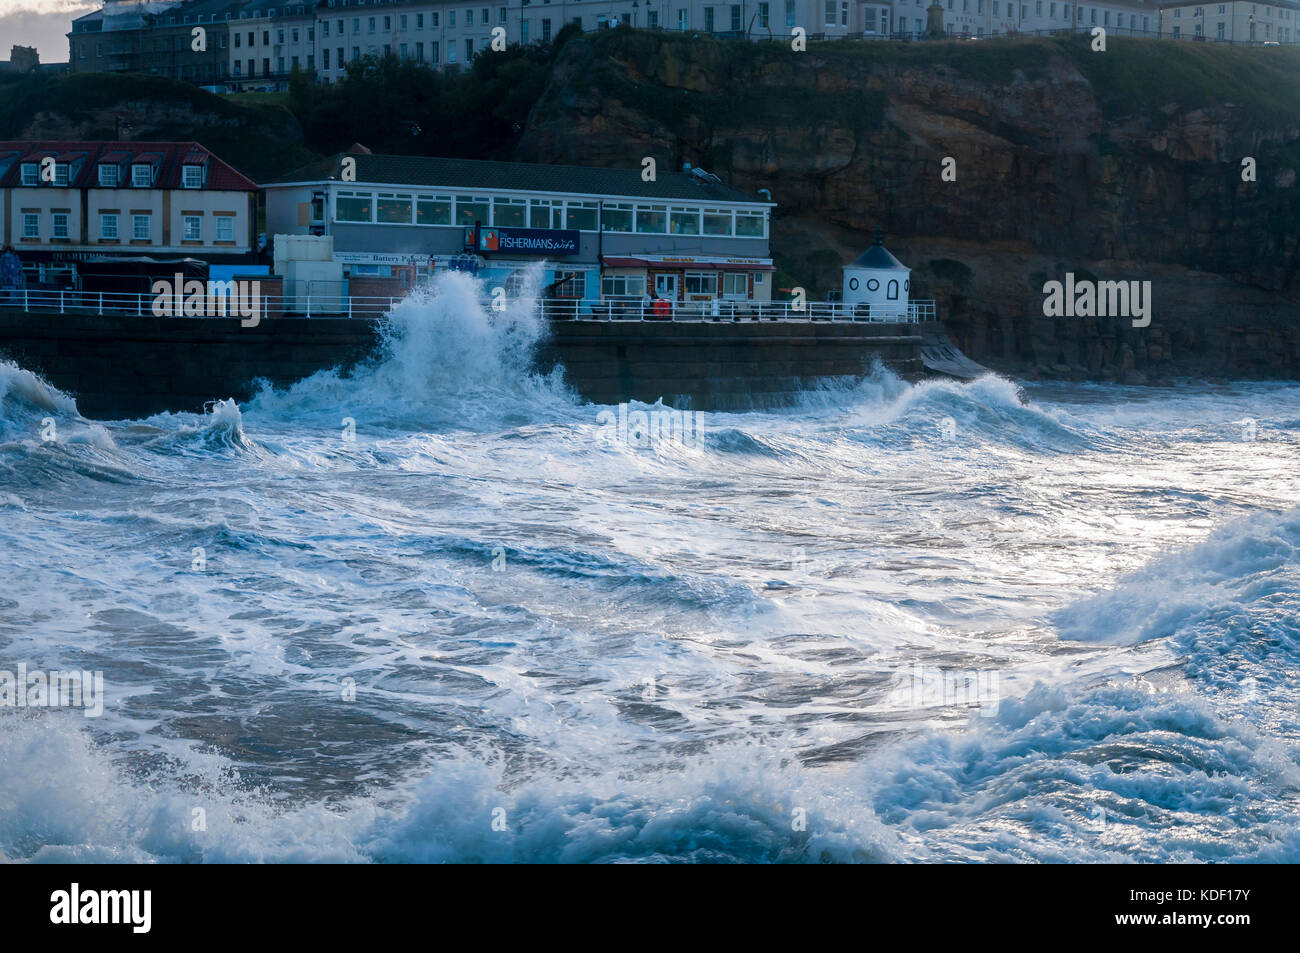 Heavy seas at Whitby, Yorkshire, England Stock Photo